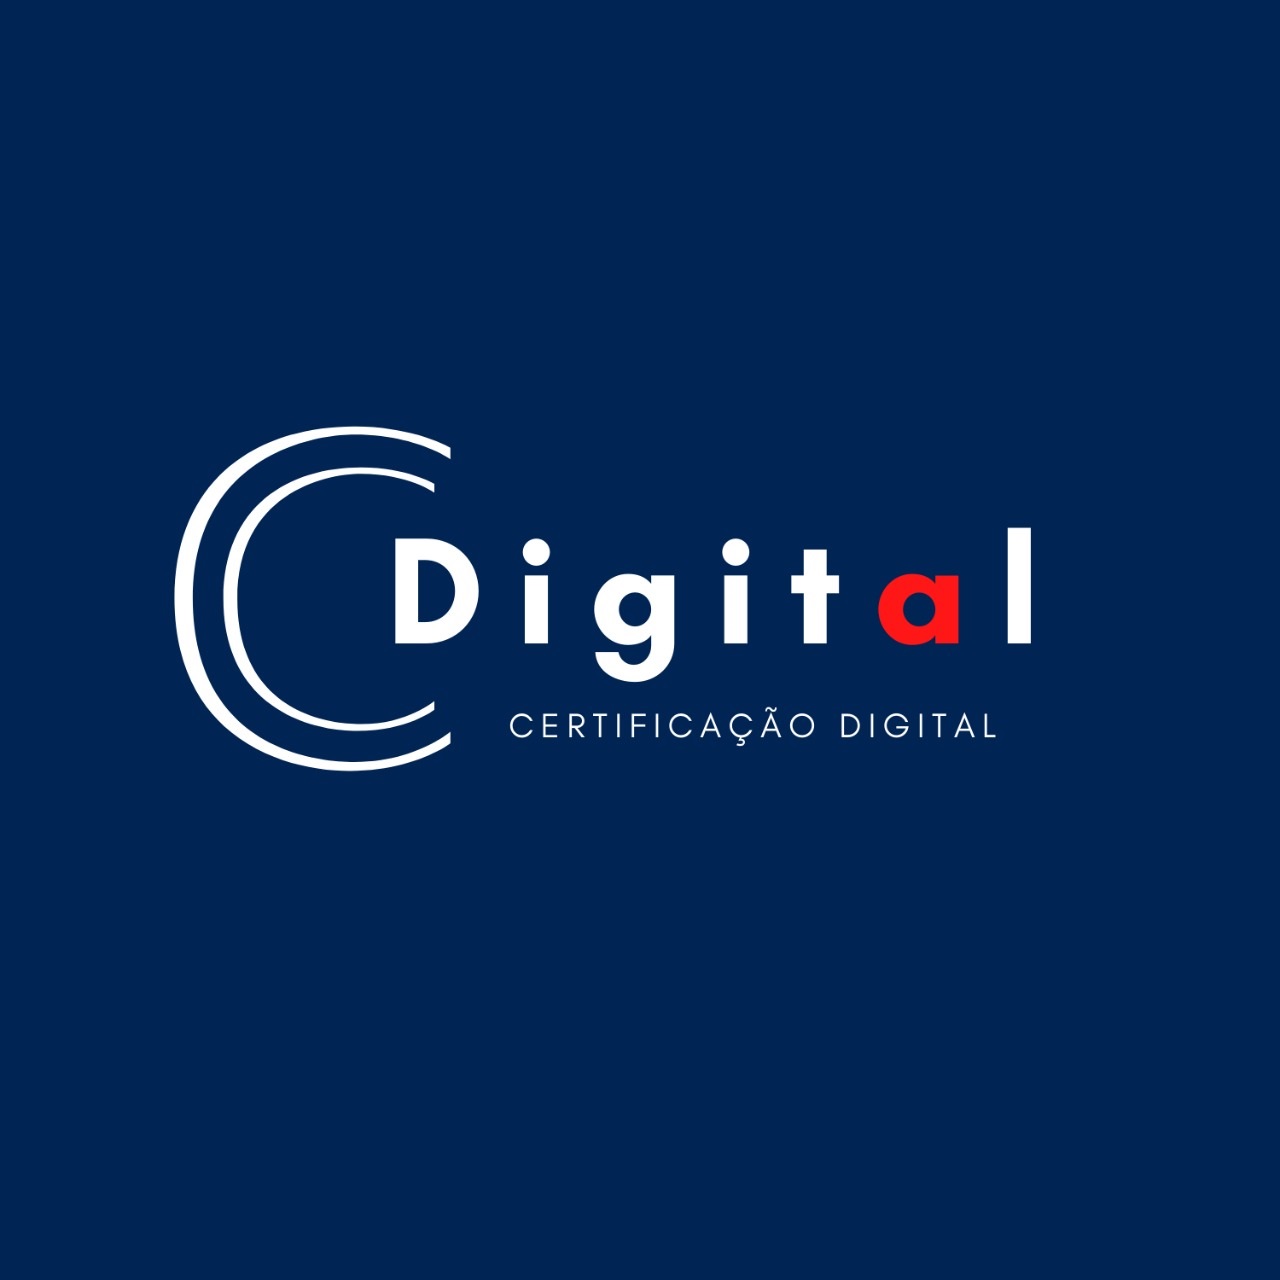 Logotipo do parceiro CDigital &#8211; Integritate Gestão Contábil &#038; Administrativa &#8211; 10%